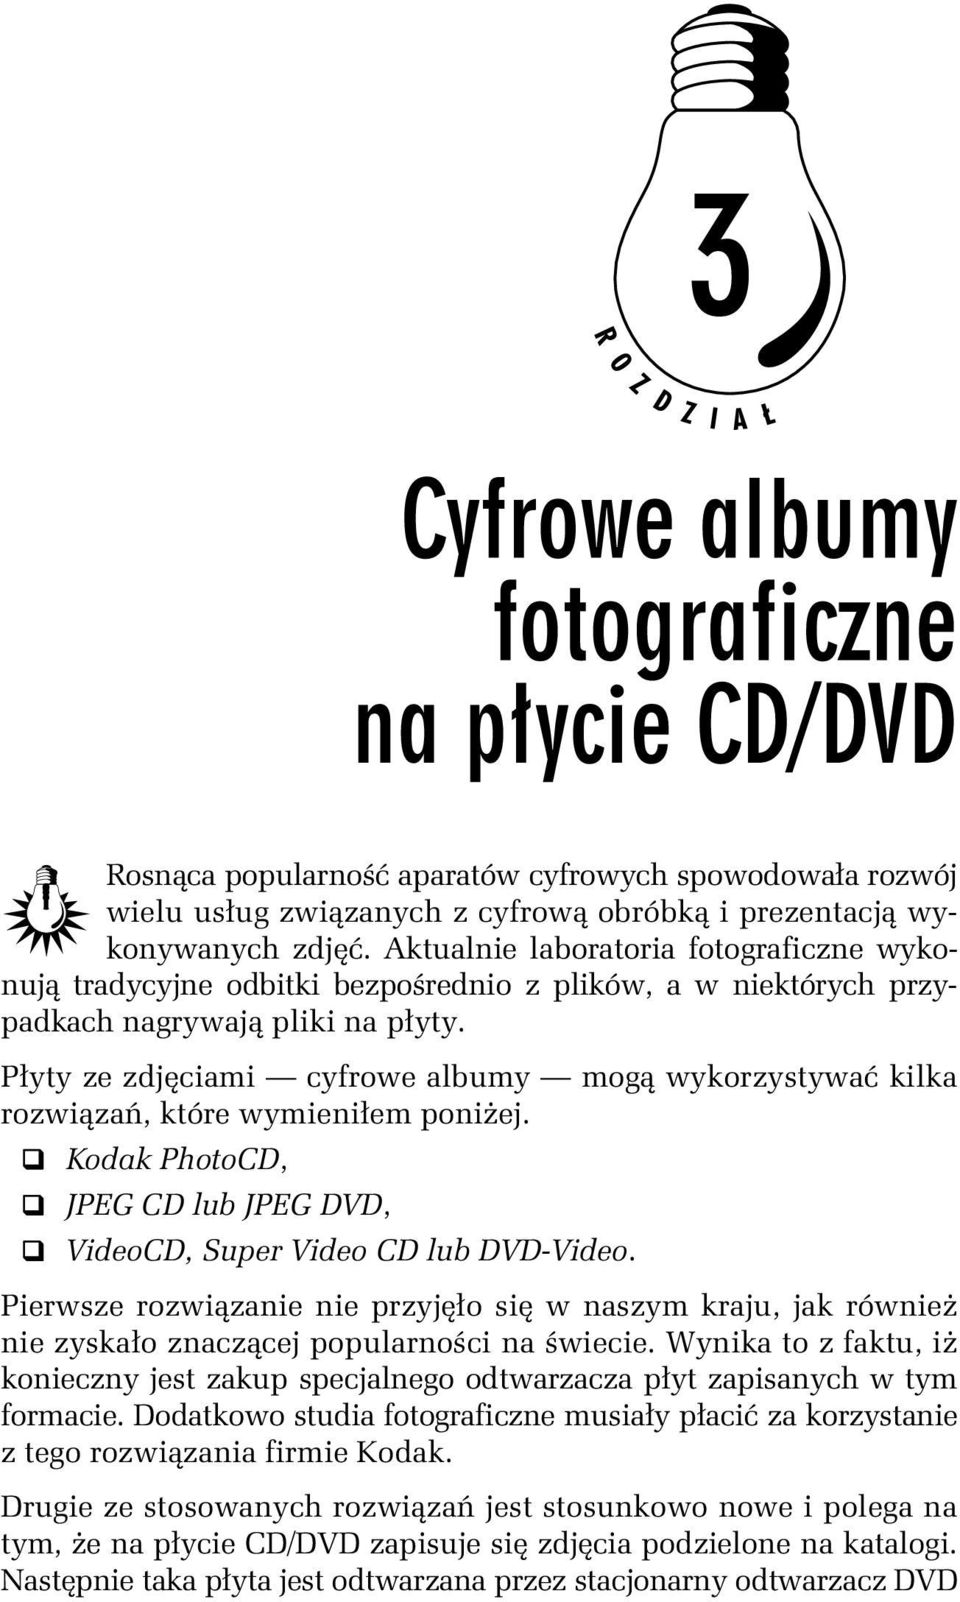 Płyty ze zdjęciami cyfrowe albumy mogą wykorzystywać kilka rozwiązań, które wymieniłem poniżej. Kodak PhotoCD, JPEG CD lub JPEG DVD, VideoCD, Super Video CD lub DVD-Video.